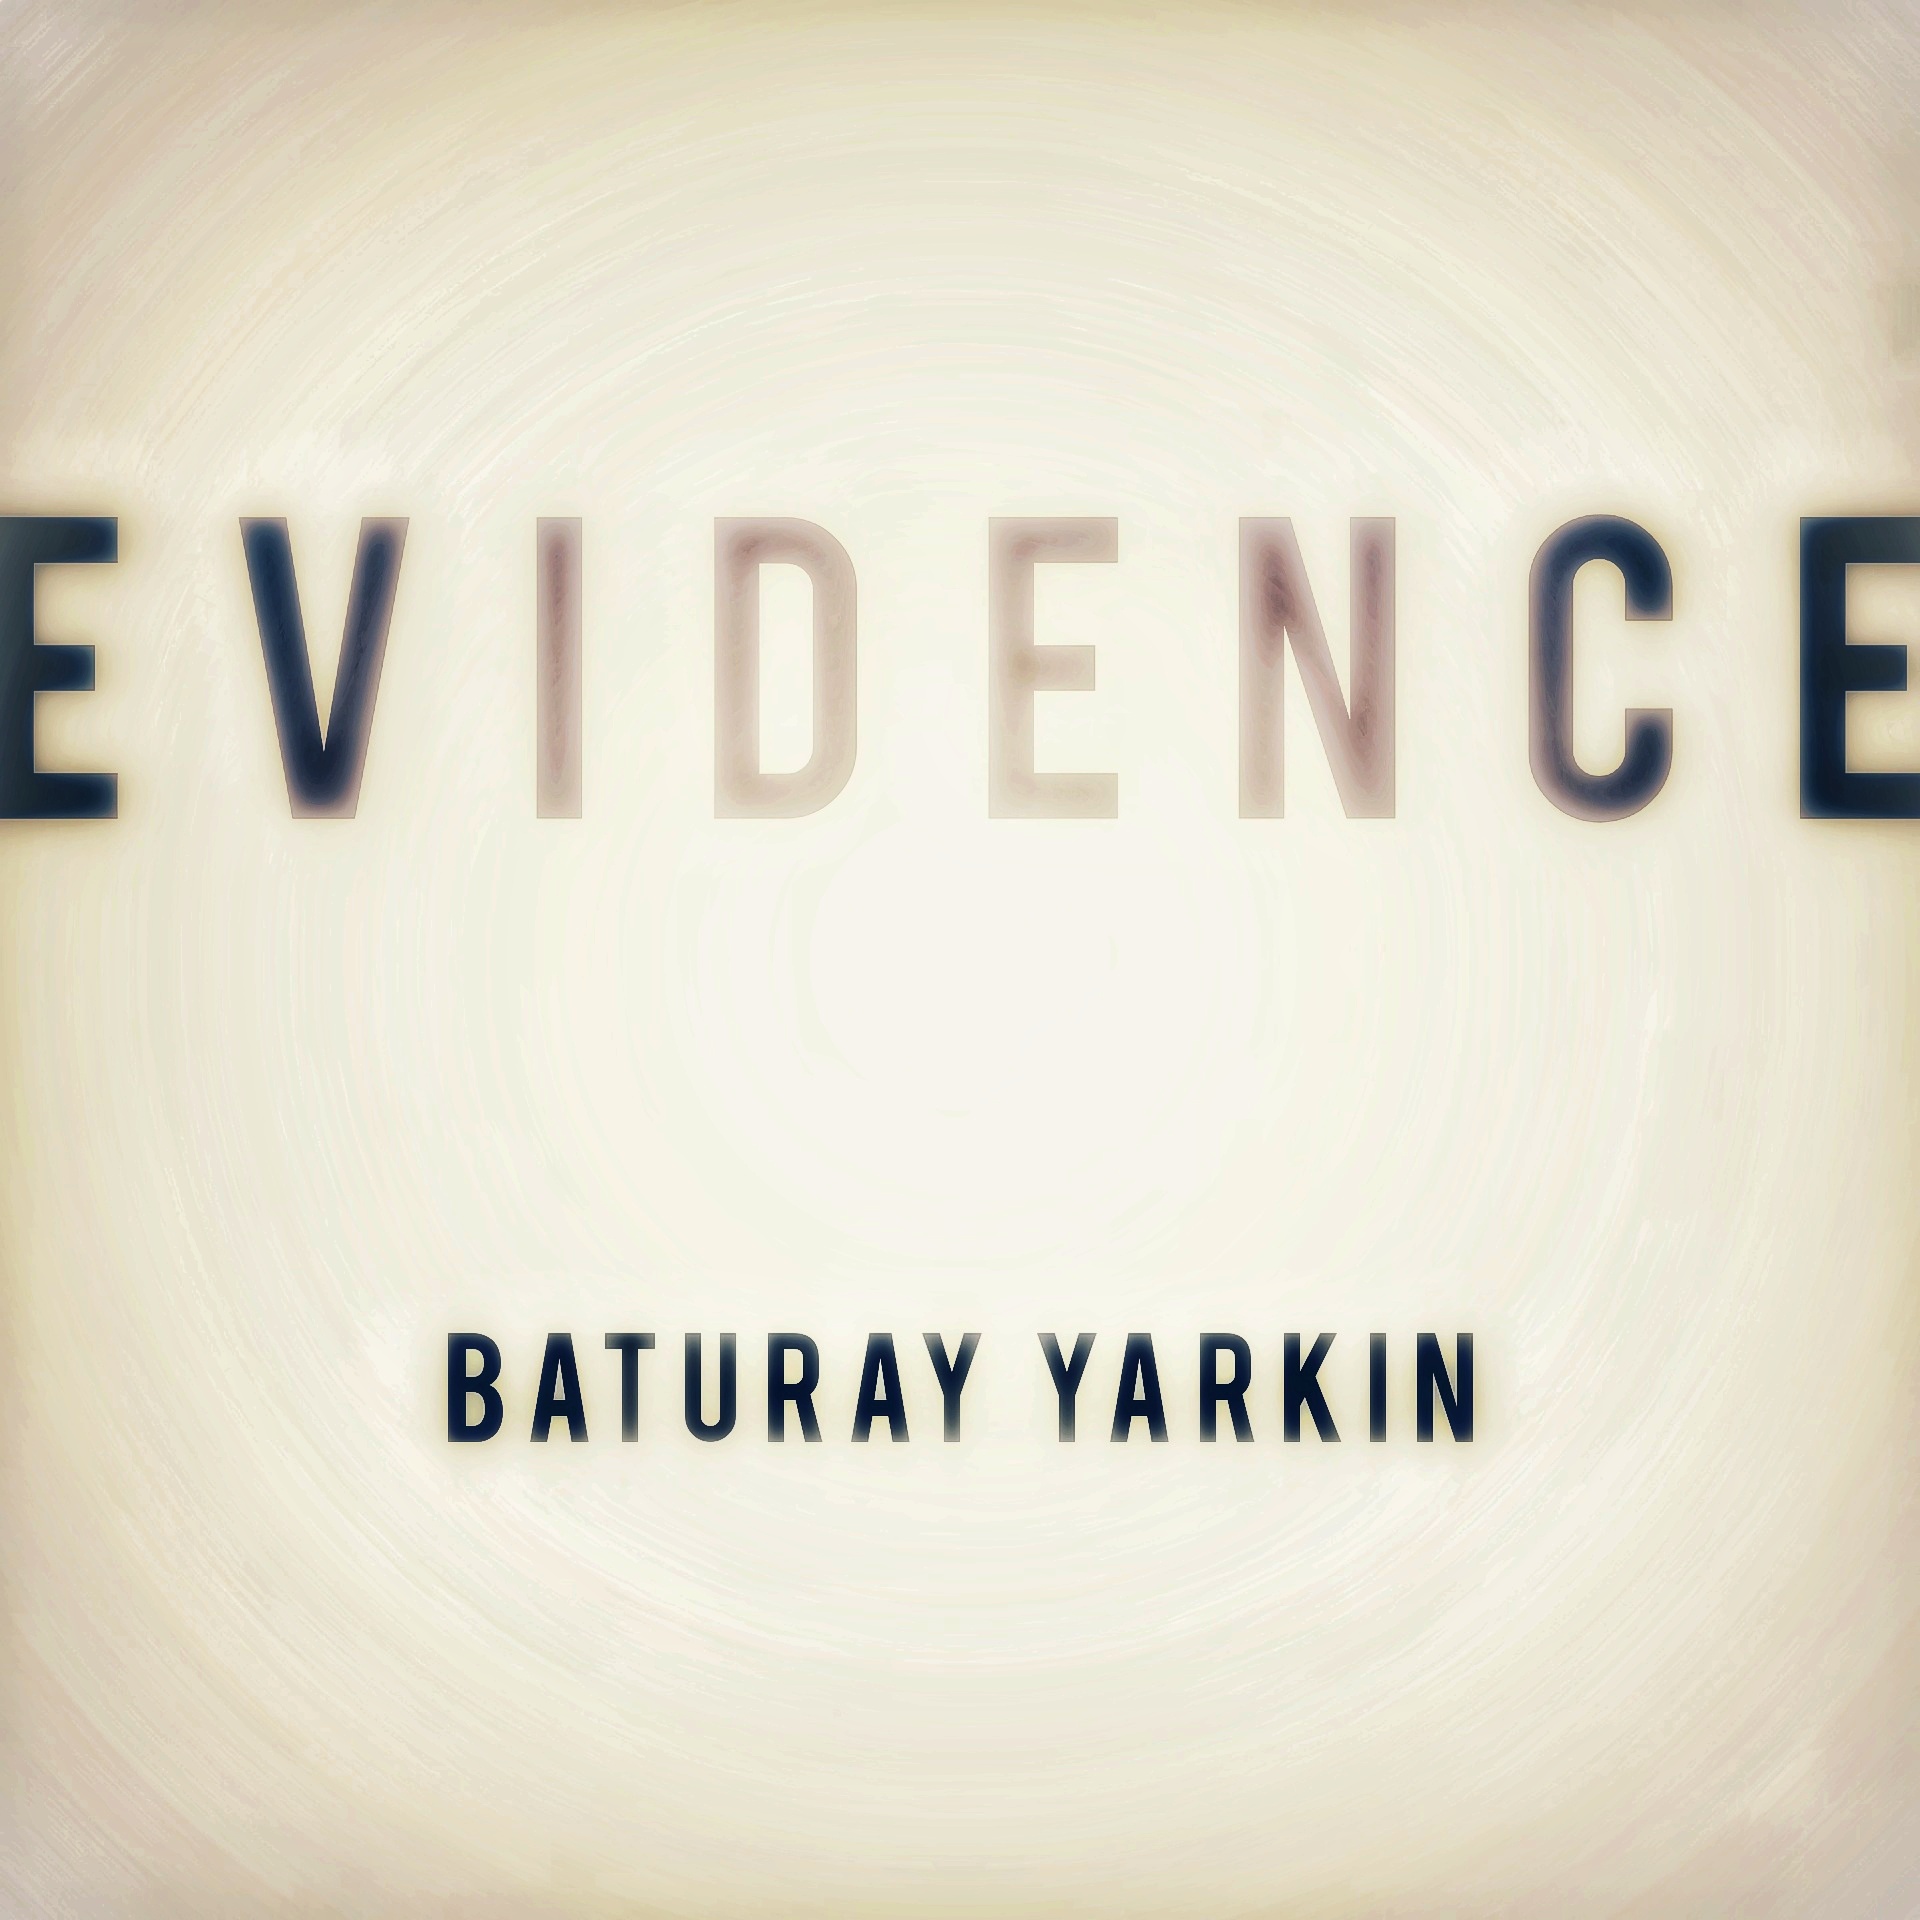 Baturay Yarkın – Evidence (2022)